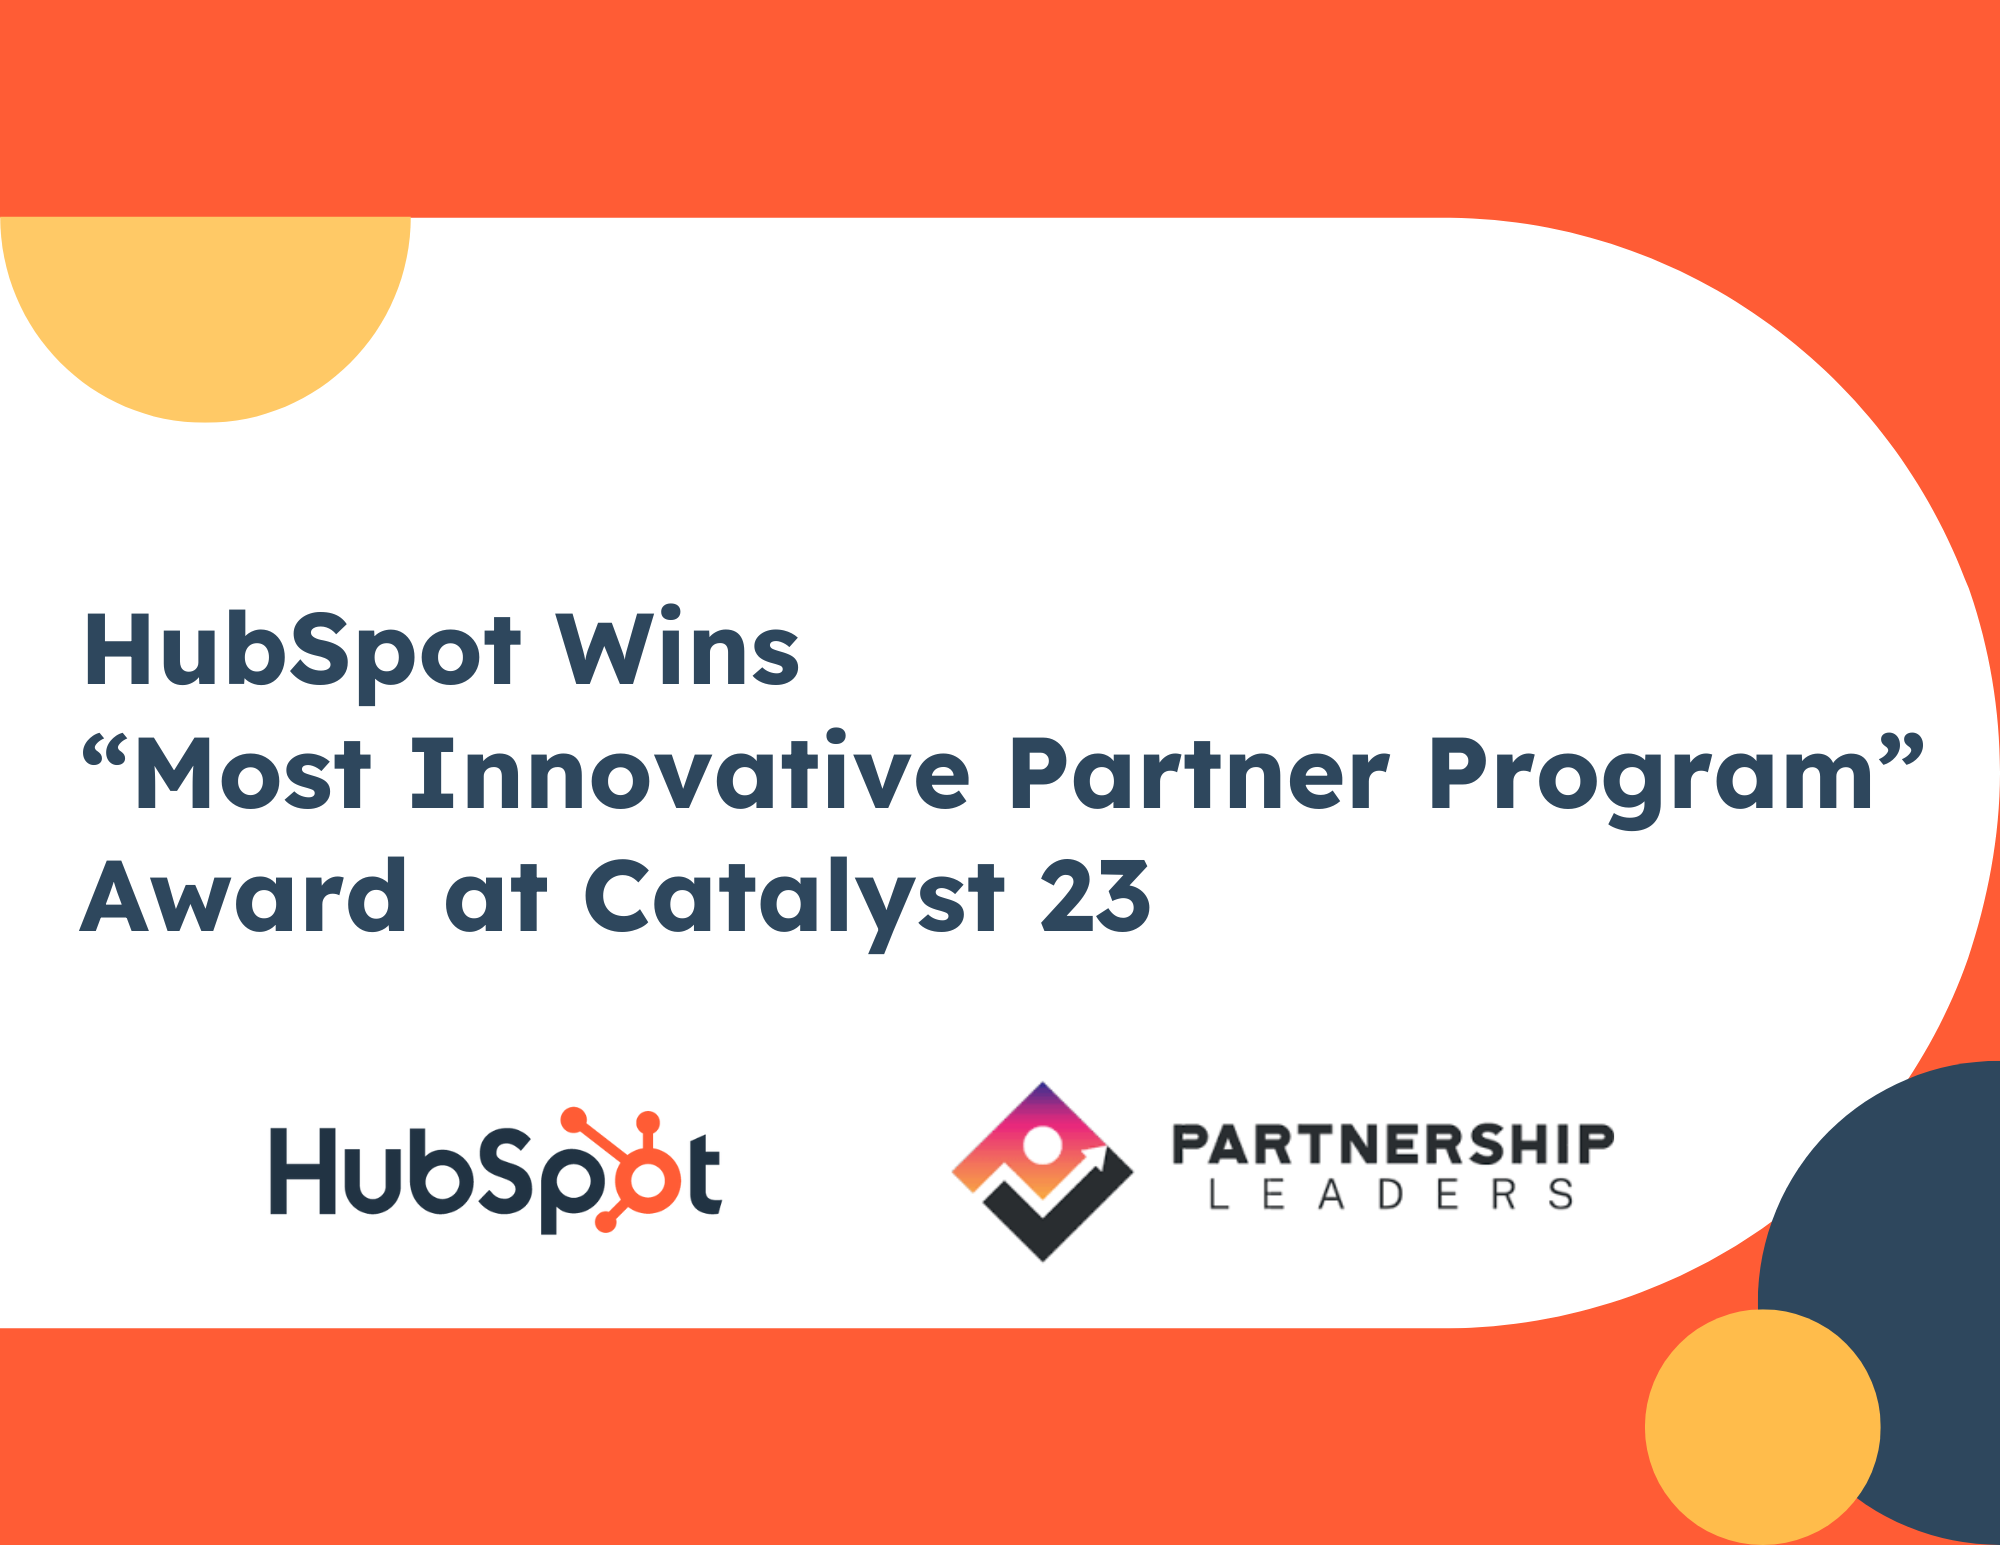 HubSpot Named “Most Innovative Partner Program” at Partnership Leaders’ Catalyst 23